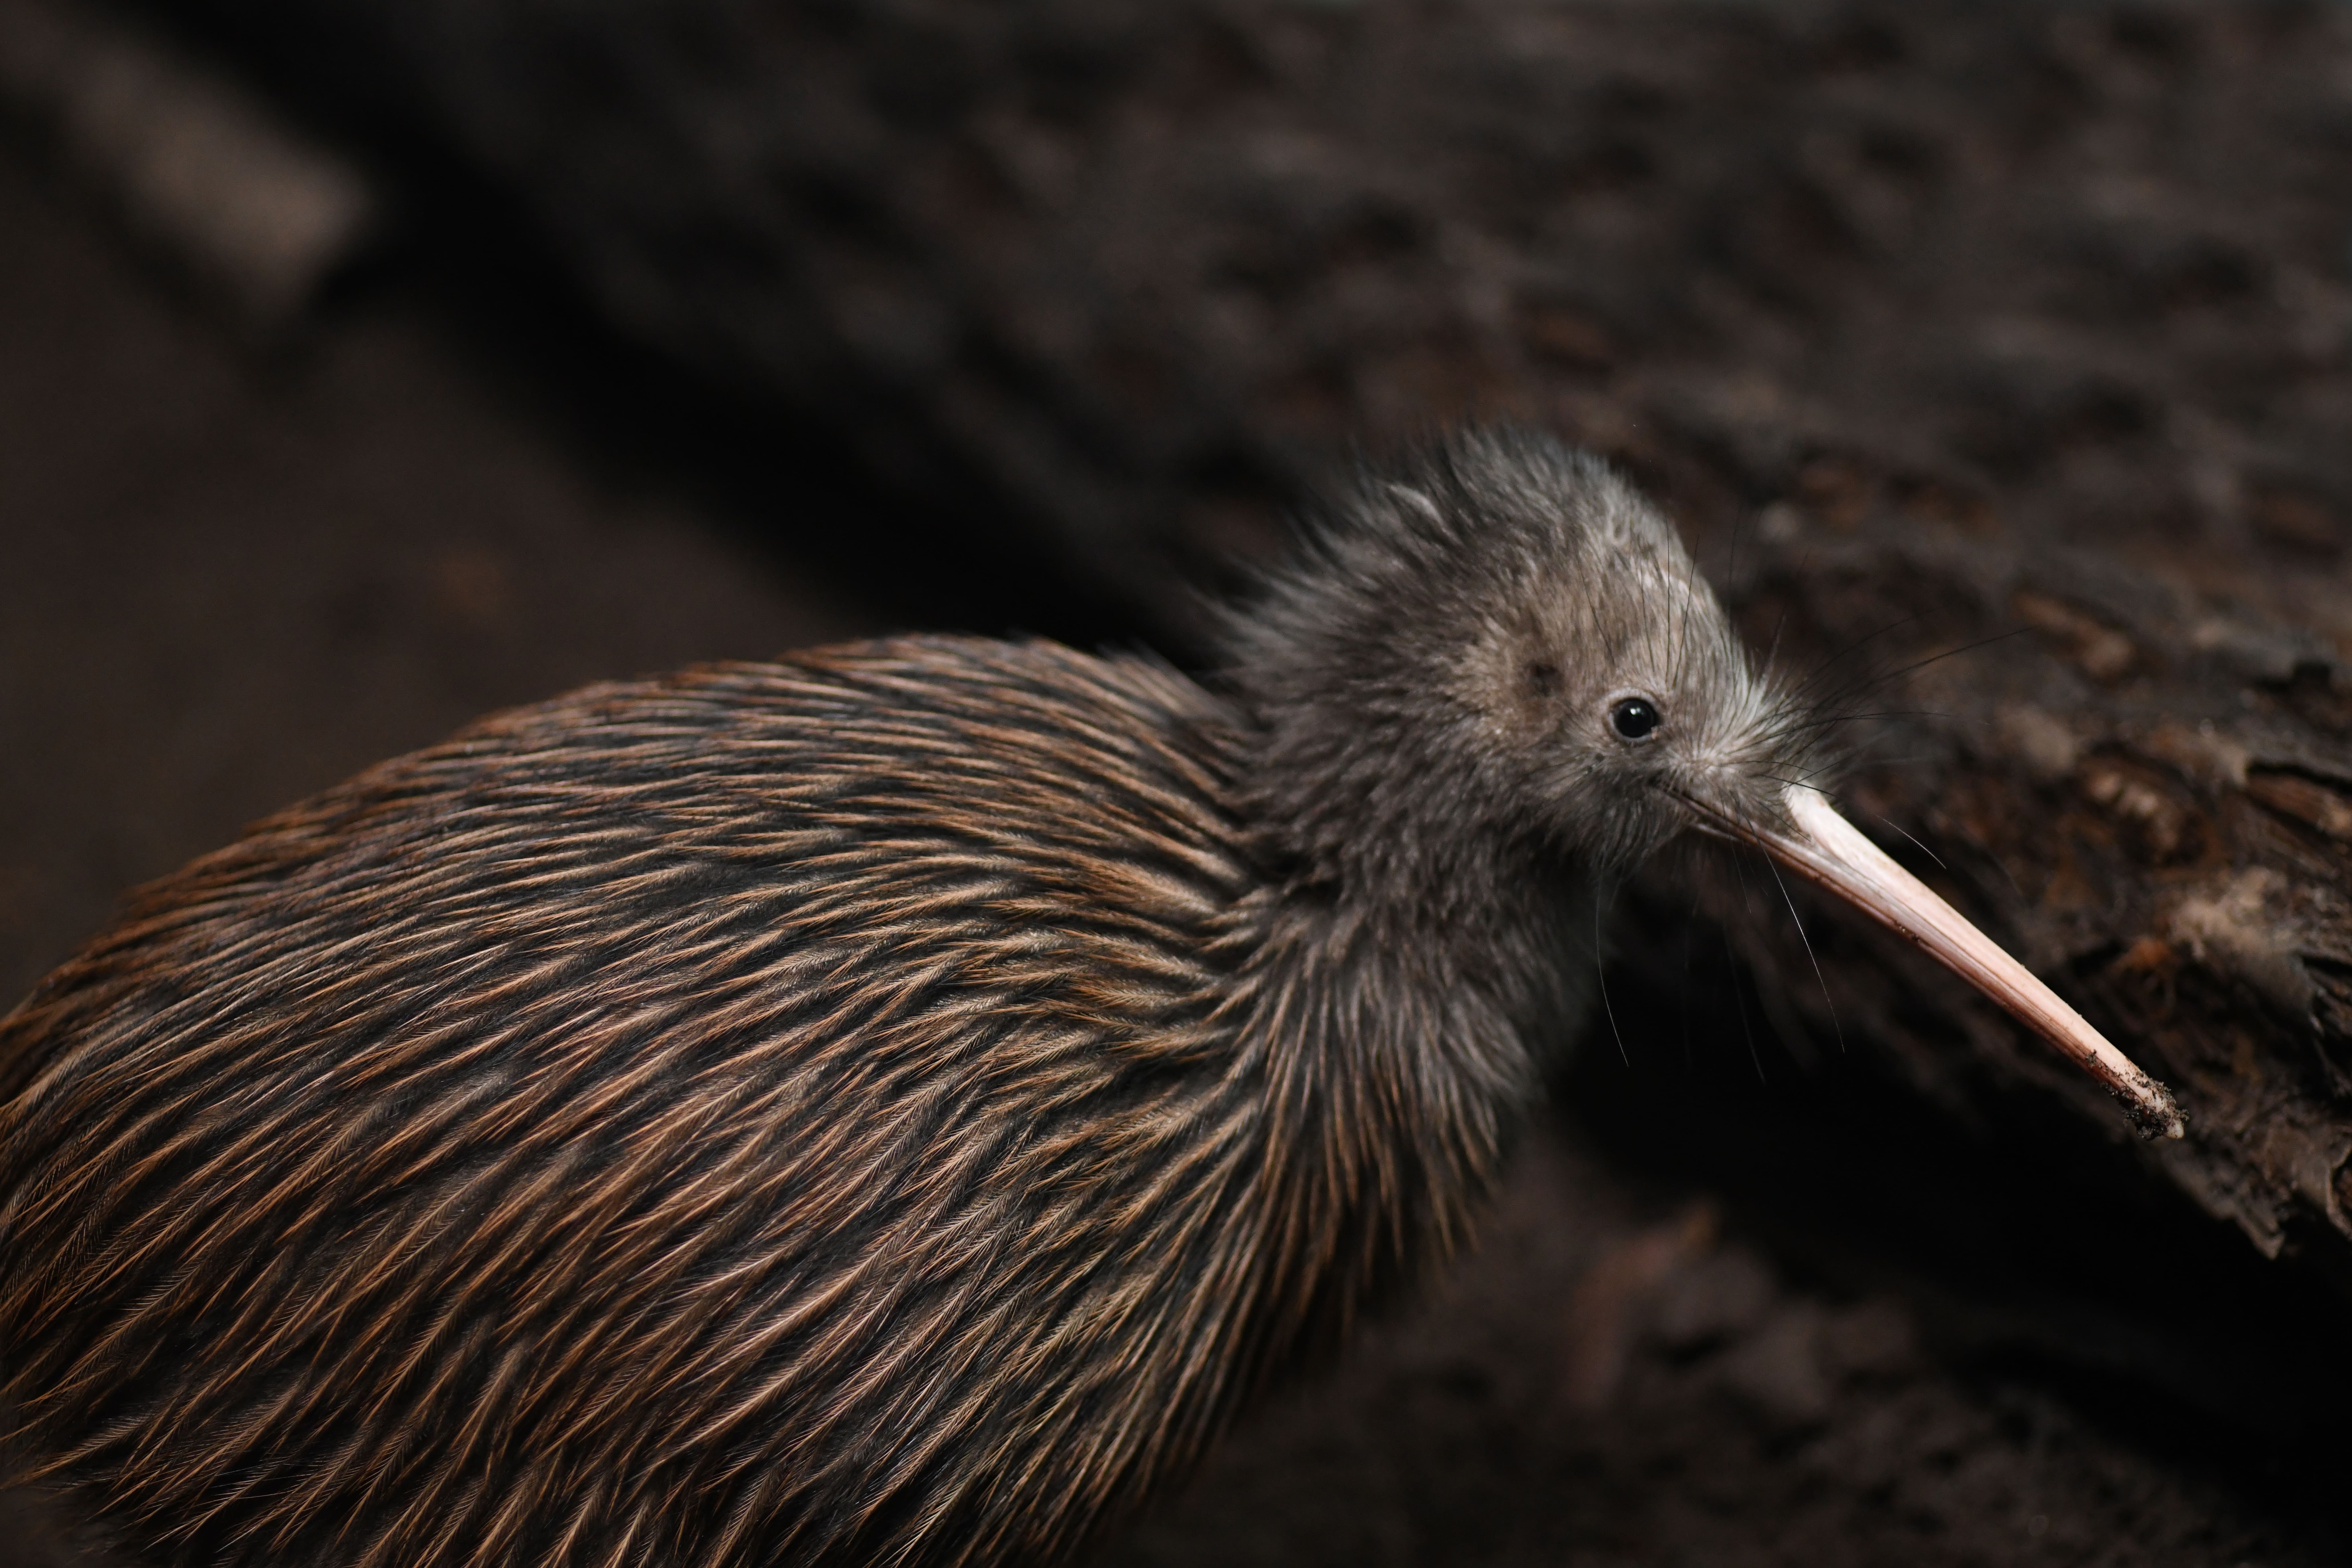 Aujourd'hui, la Nouvelle-Zélande abrite environ 70 000 kiwis, une espèce endémique vulnérable. © Lakeview Images, Adobe Stock